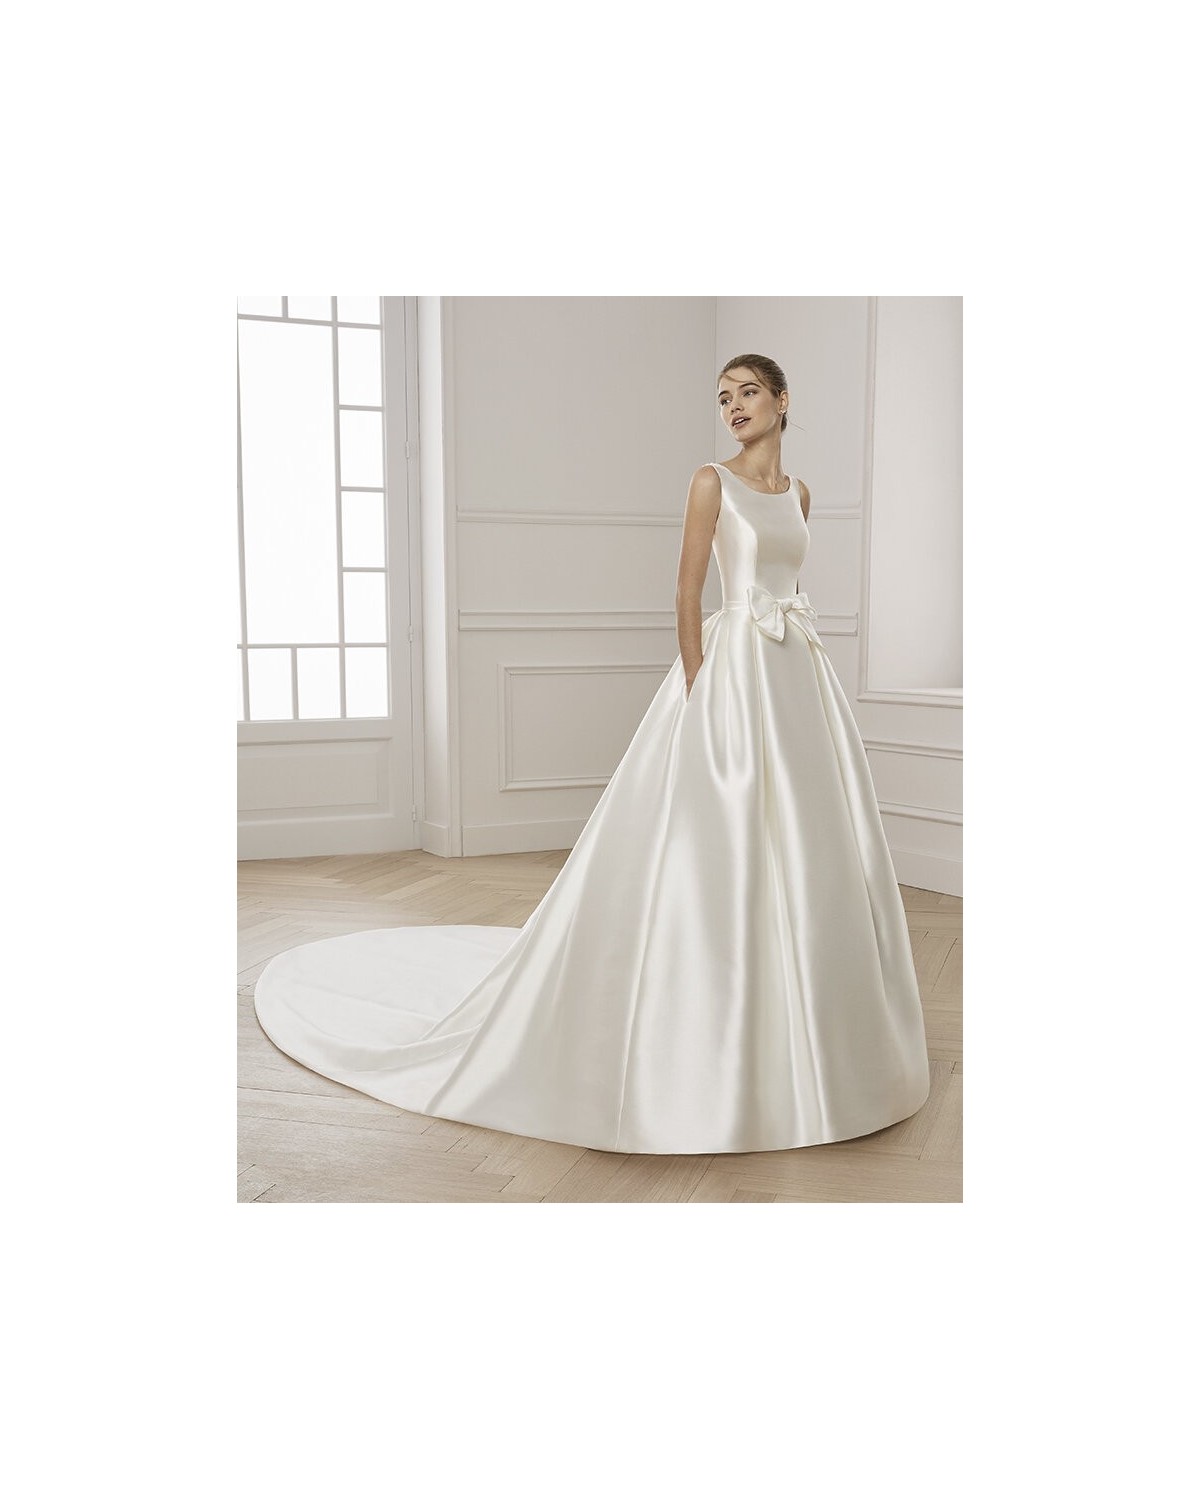 EZRA - abito da sposa collezione 2020 - AIRE BARCELONA